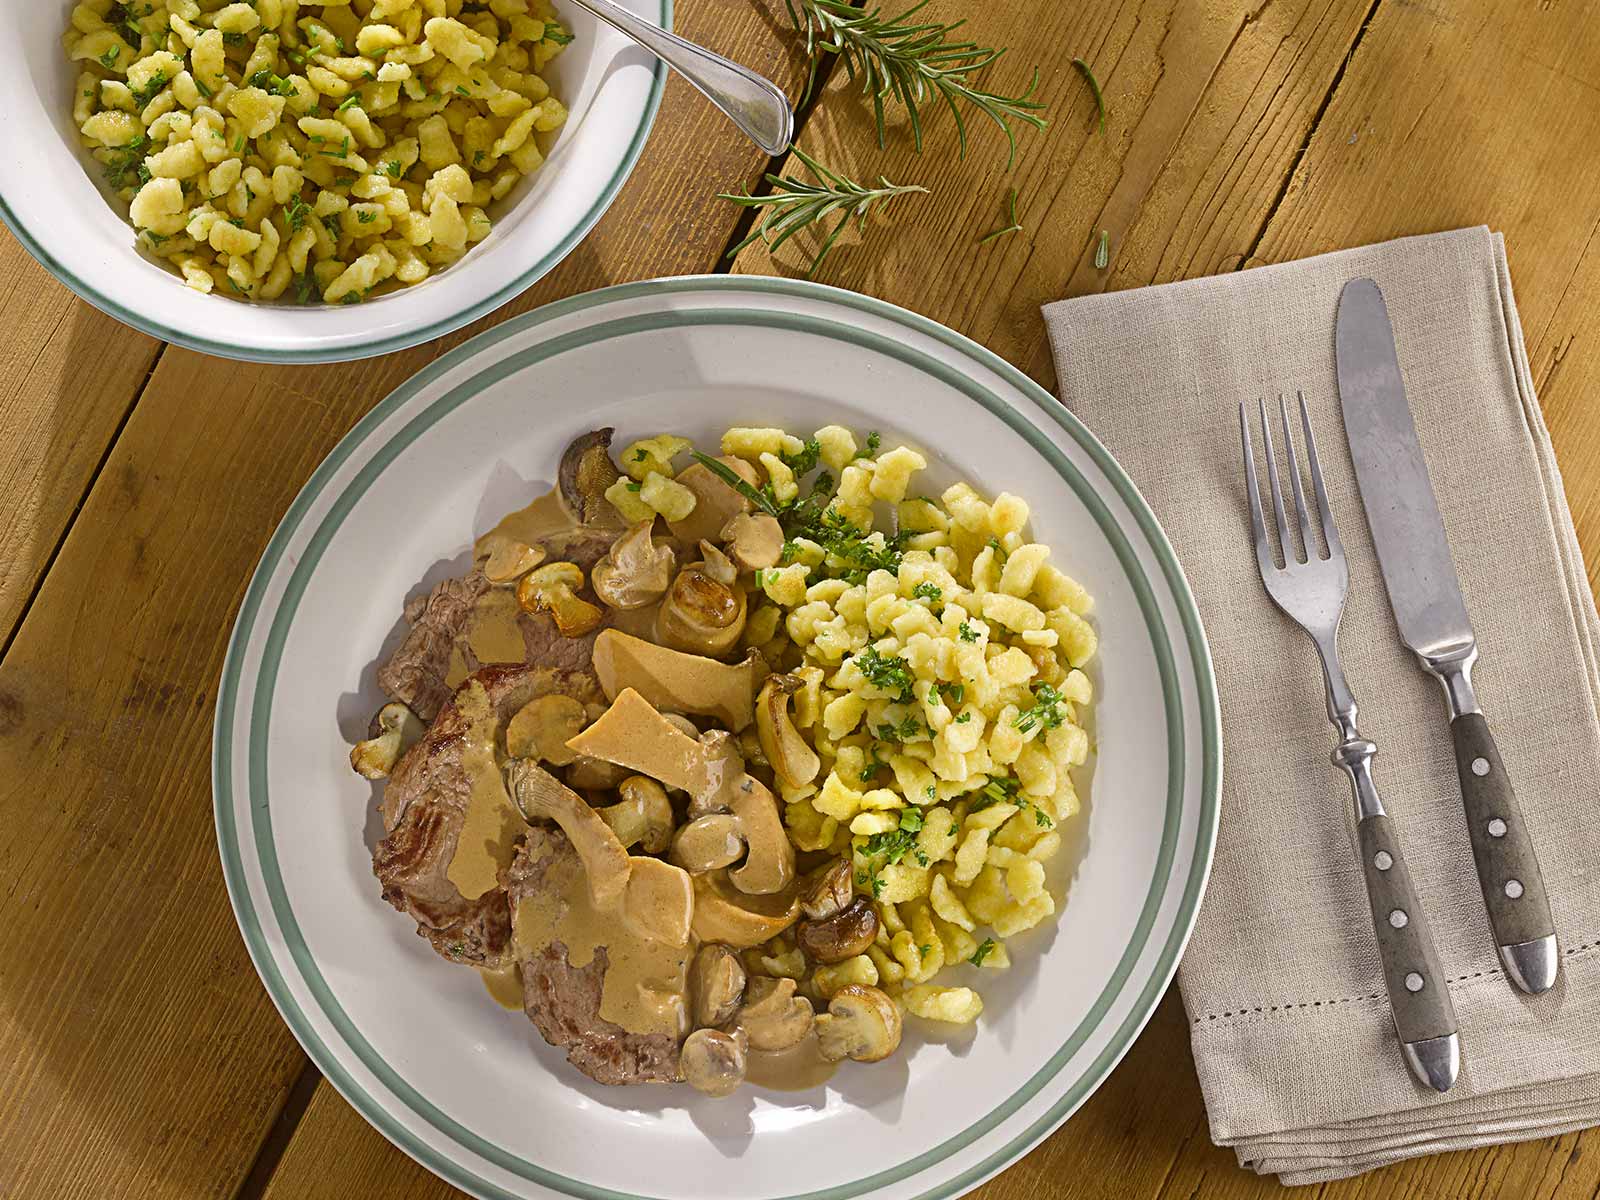 Tress Rezept für Rehschnitzel mit Pilzrahmsoße und Kräuter-Knöpfle, angerichtet auf einem weißen Teller mit grünem Rand.